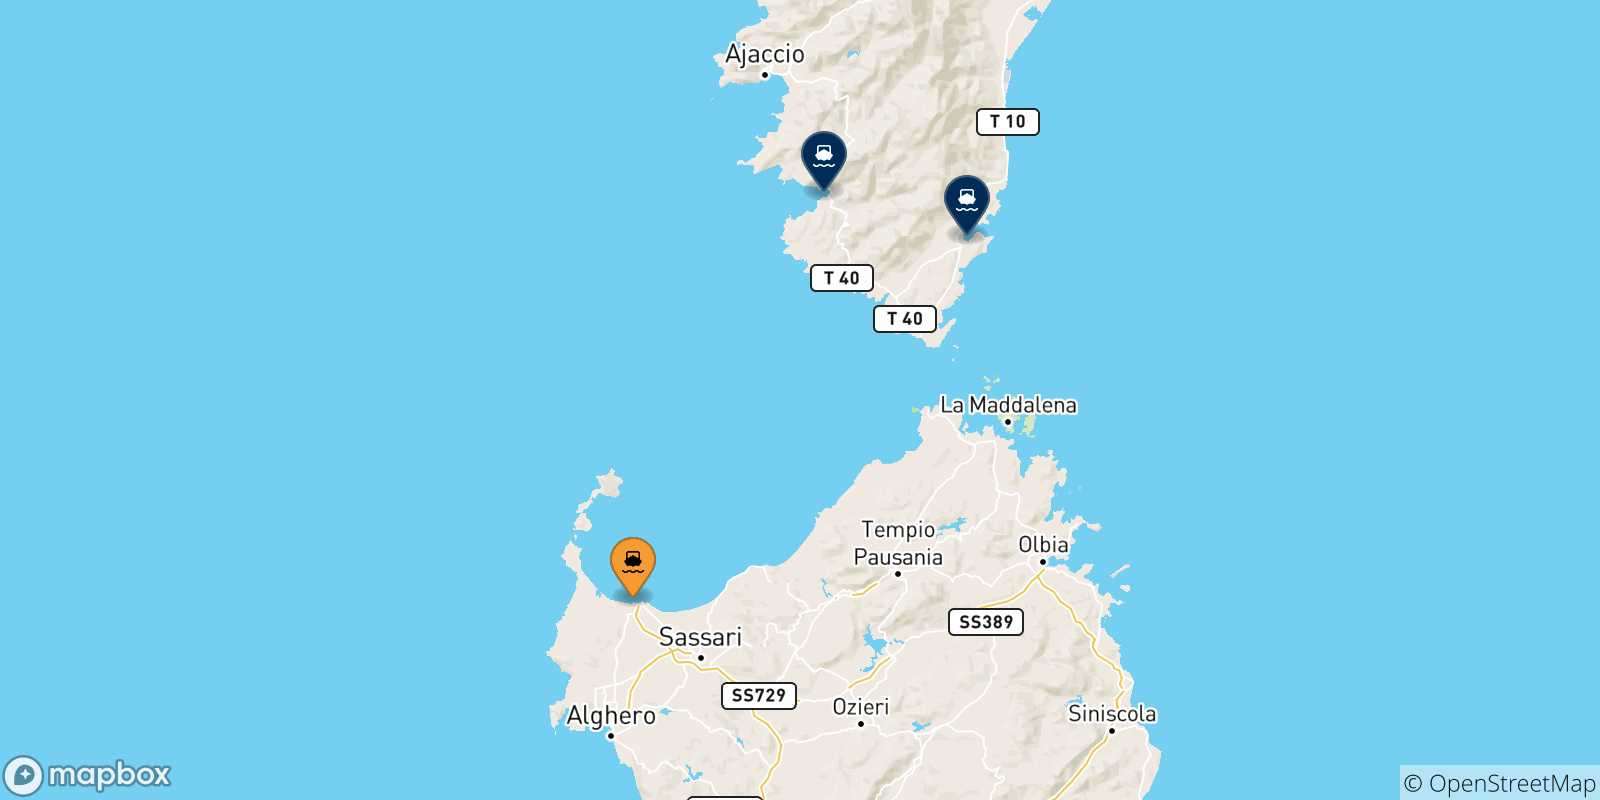 Mappa delle possibili rotte tra Porto Torres e la Corsica